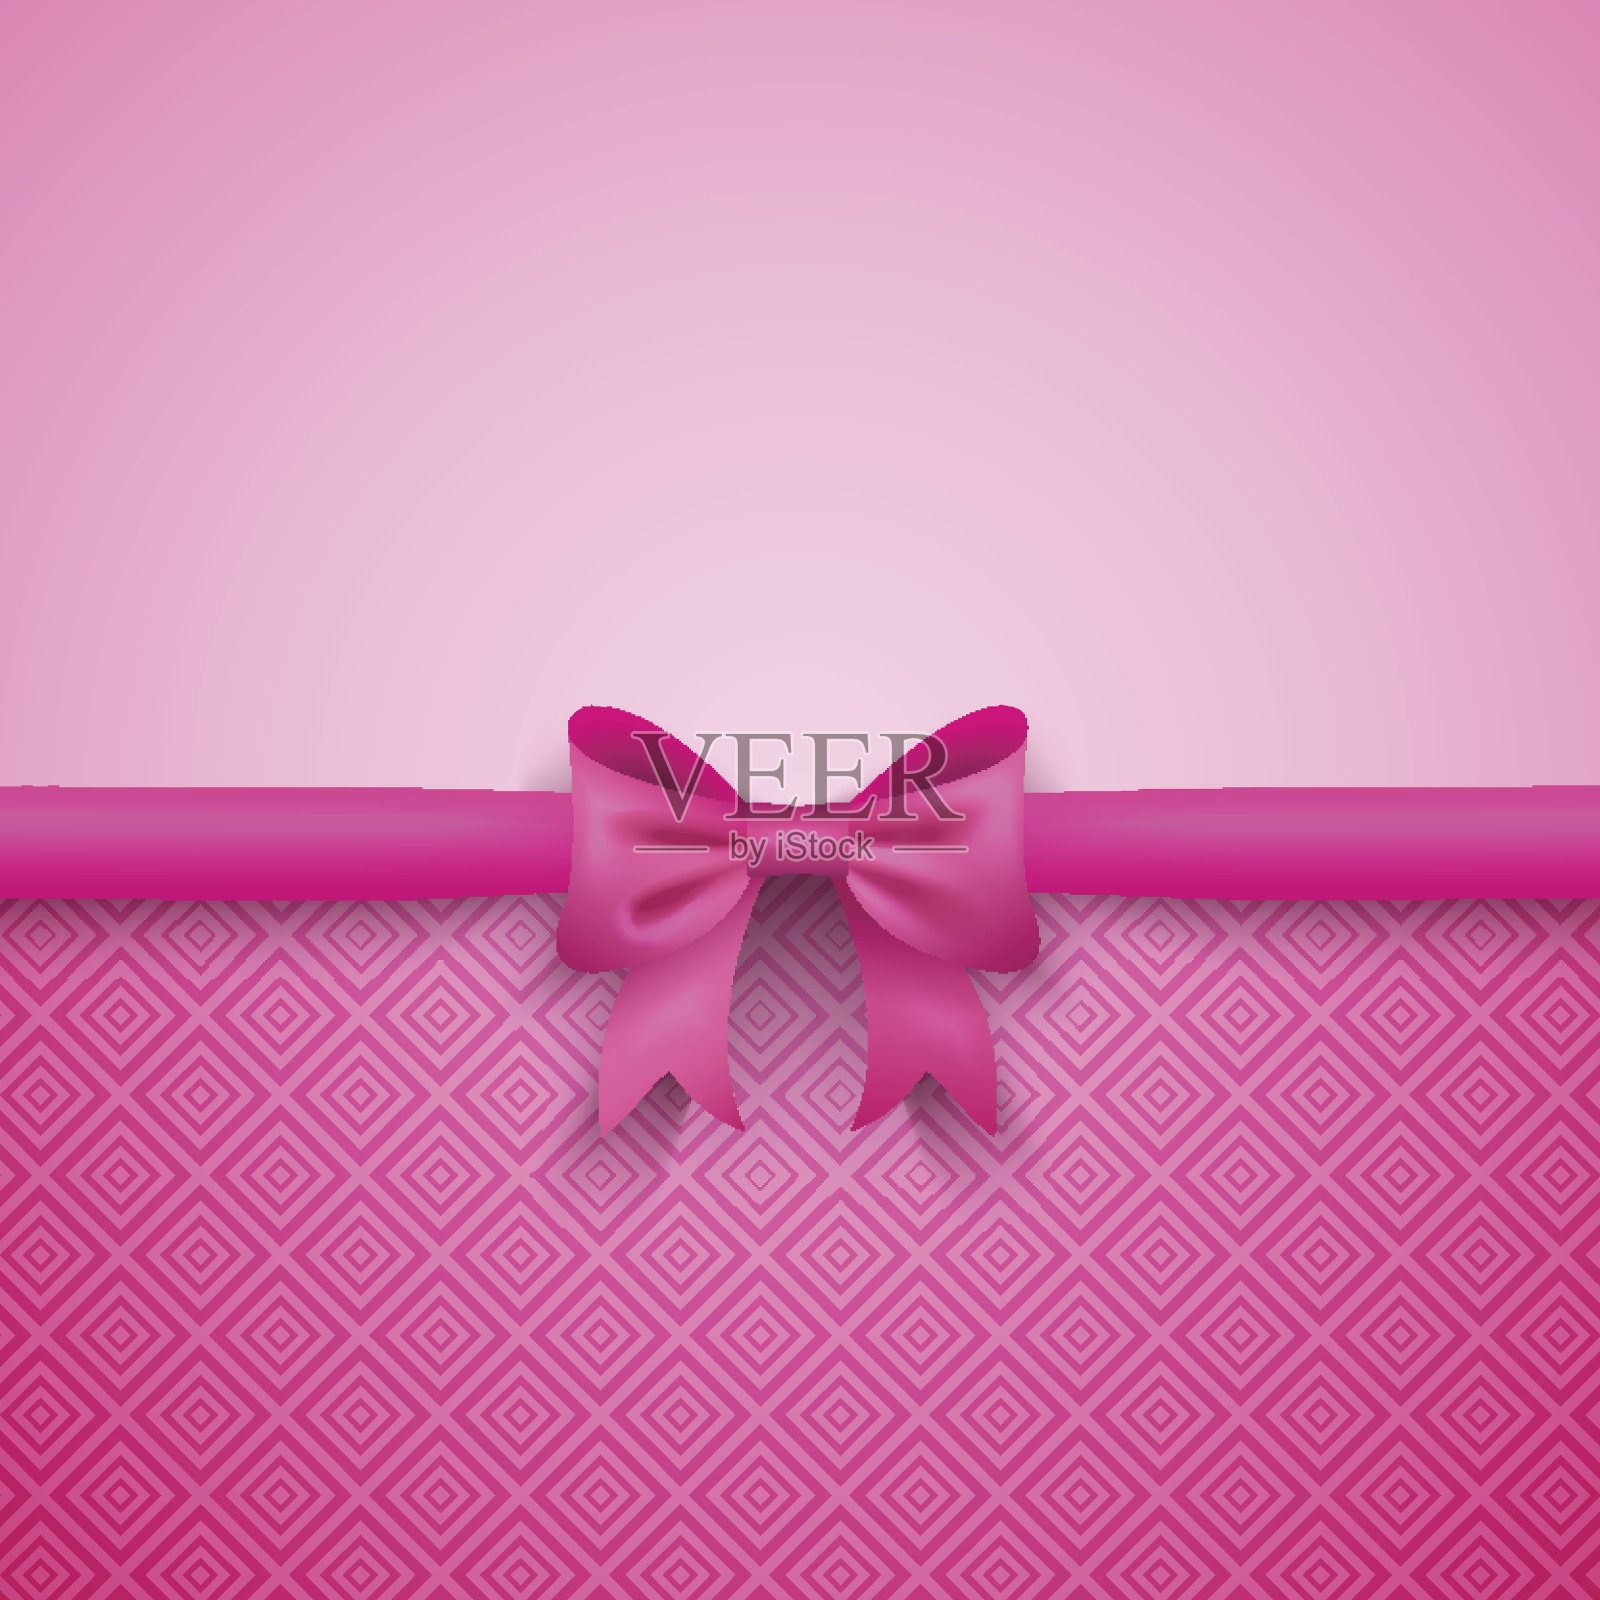 浪漫的矢量粉色背景与可爱的蝴蝶结和图案设计元素图片